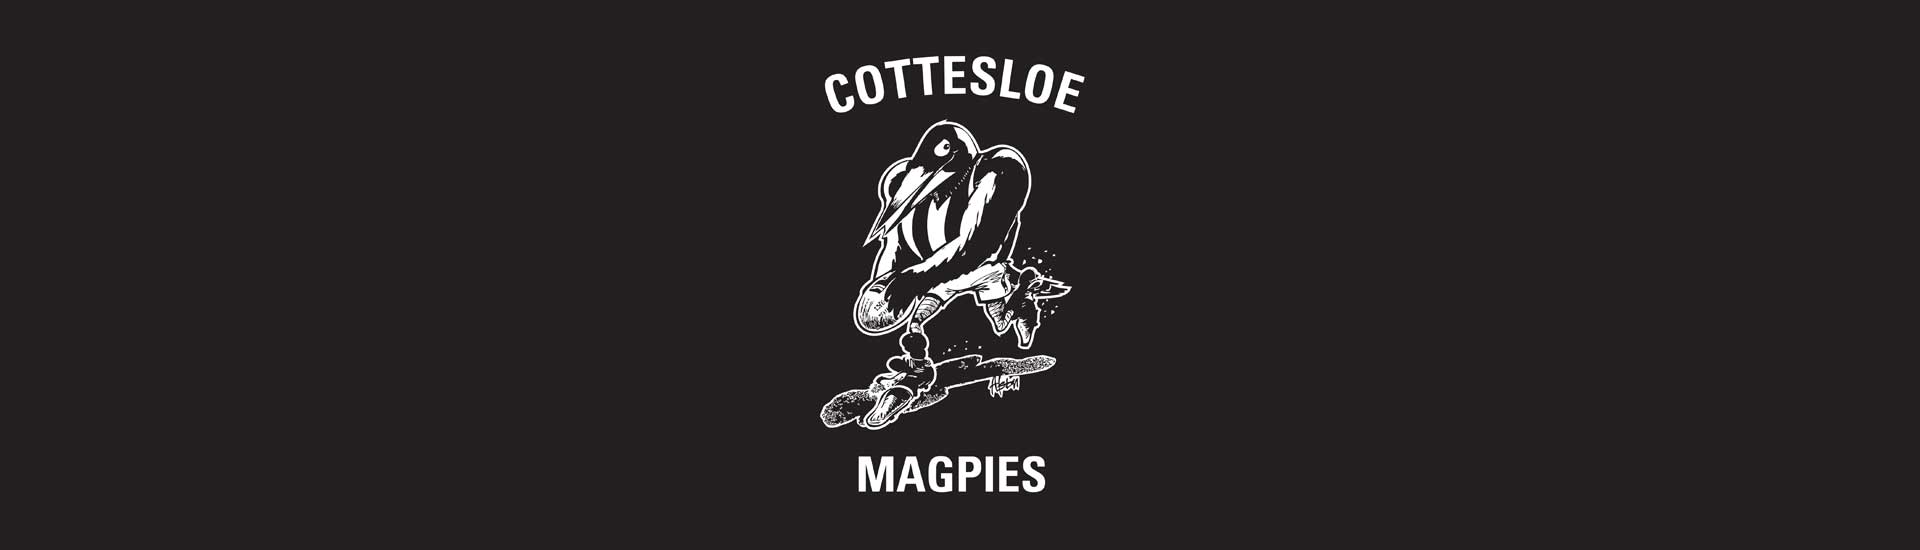 Cottesloe Junior Football Club Image